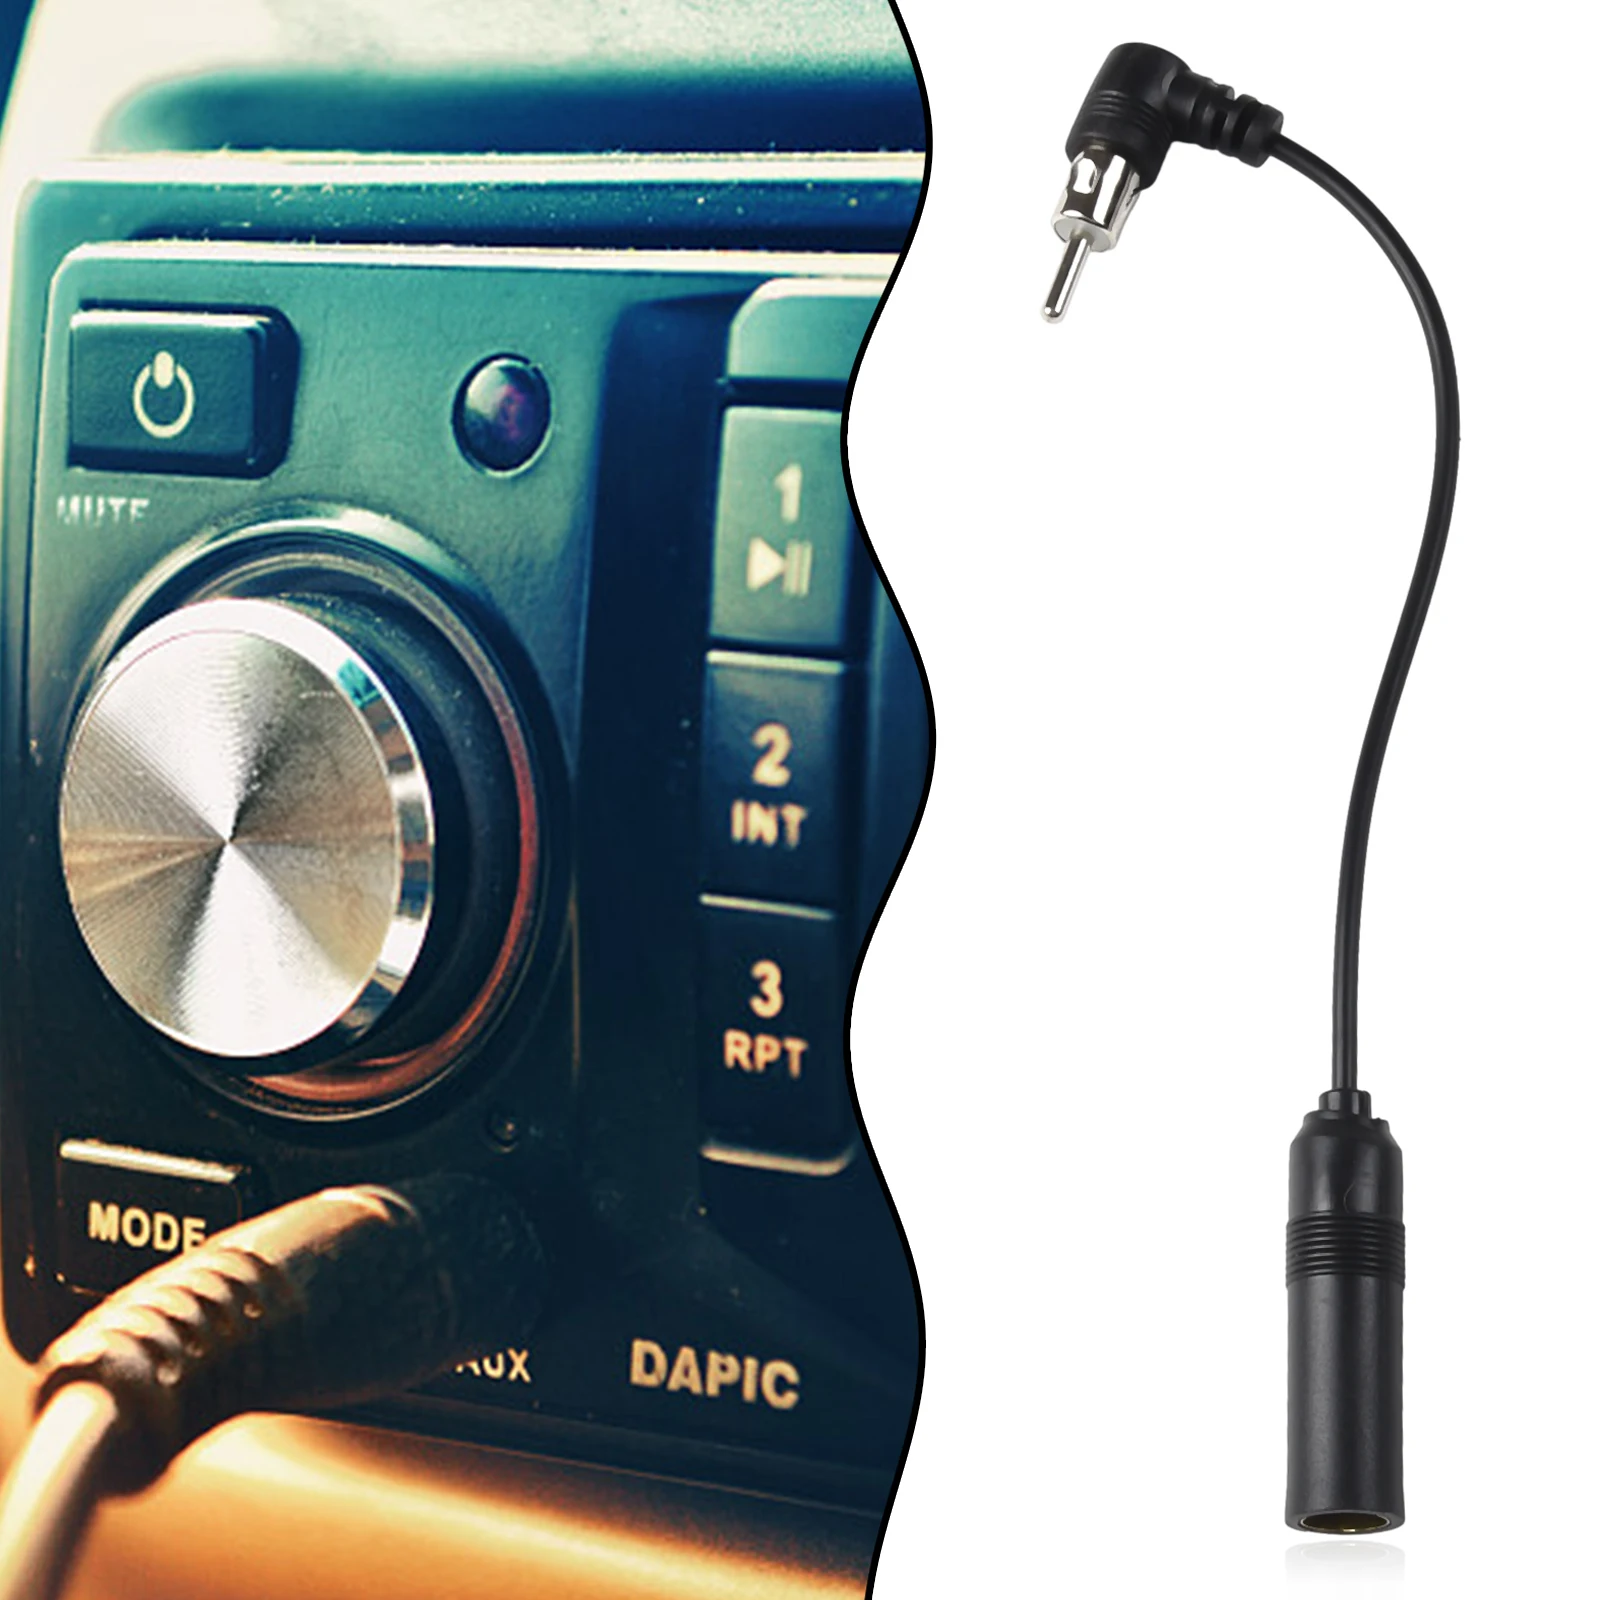 

Автомобильный адаптер для стерео аудио радио антенны адаптер Антенна удлинитель антенна адаптер автомобильное стерео аудио Радио Новая и общая длина